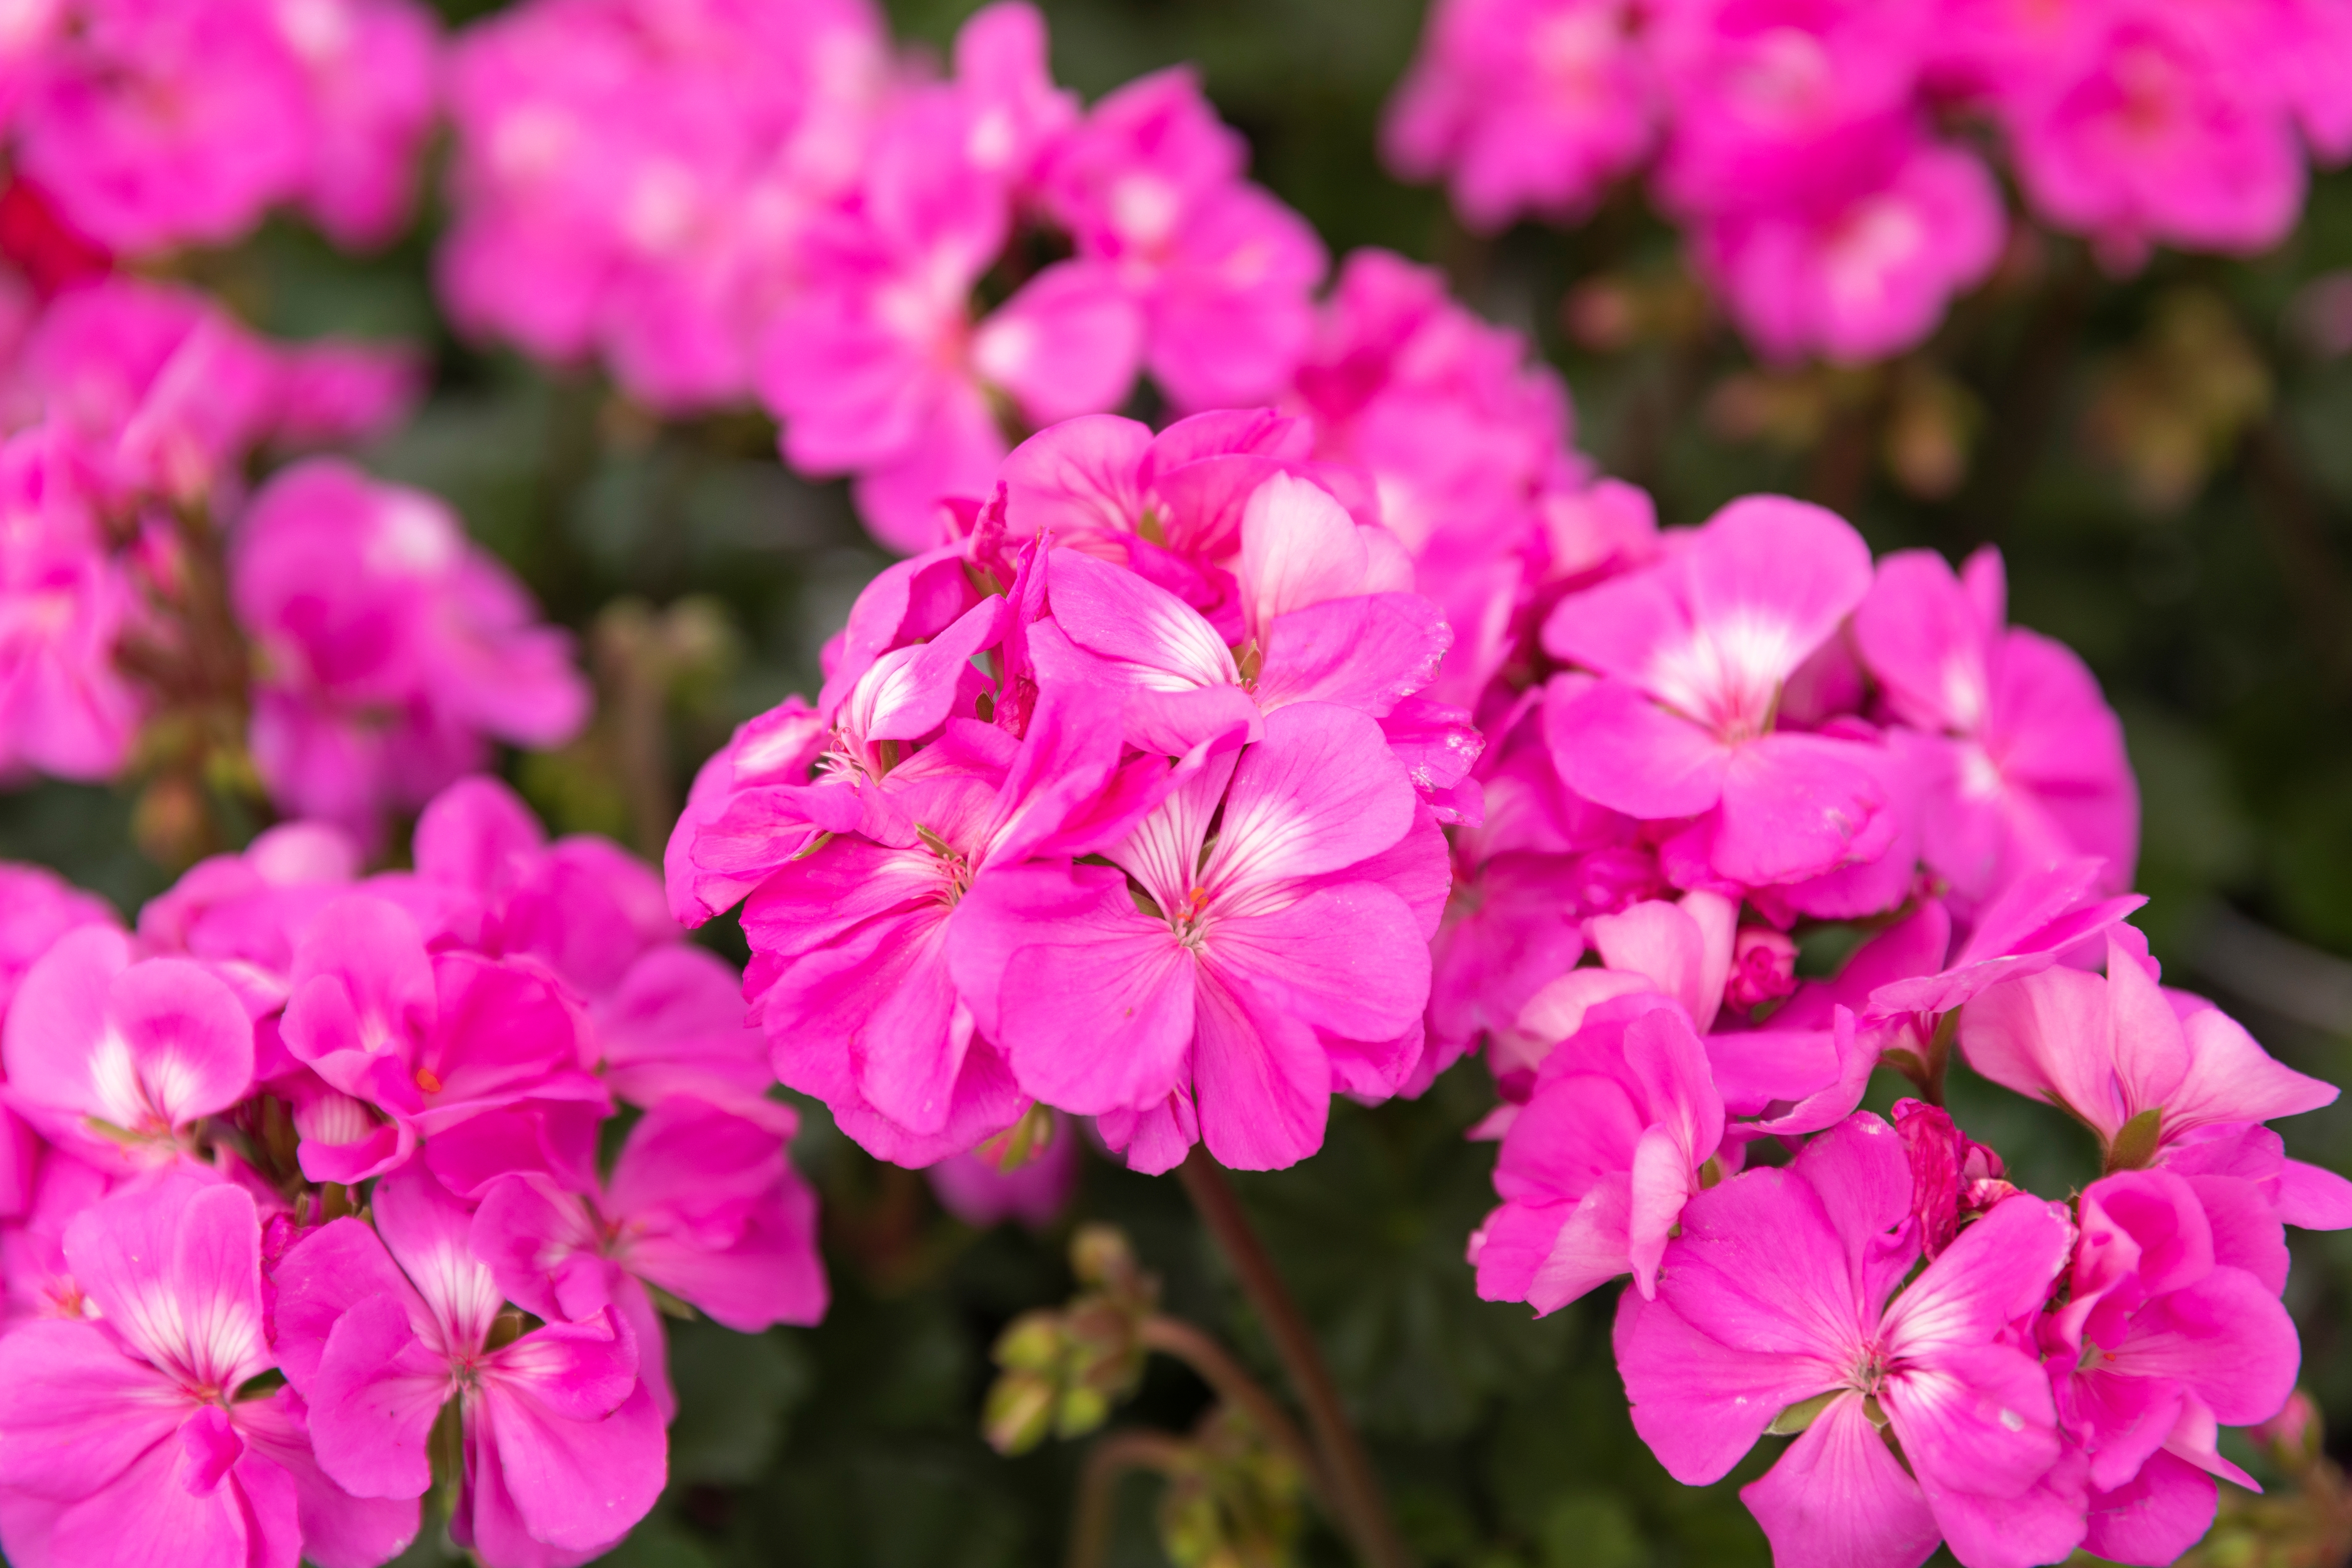 Le pélargonium, proche du géranium, est une magnifique plante fleurie pour l’extérieur. Copyright (c) 2023 Alyh M/Shutterstock.